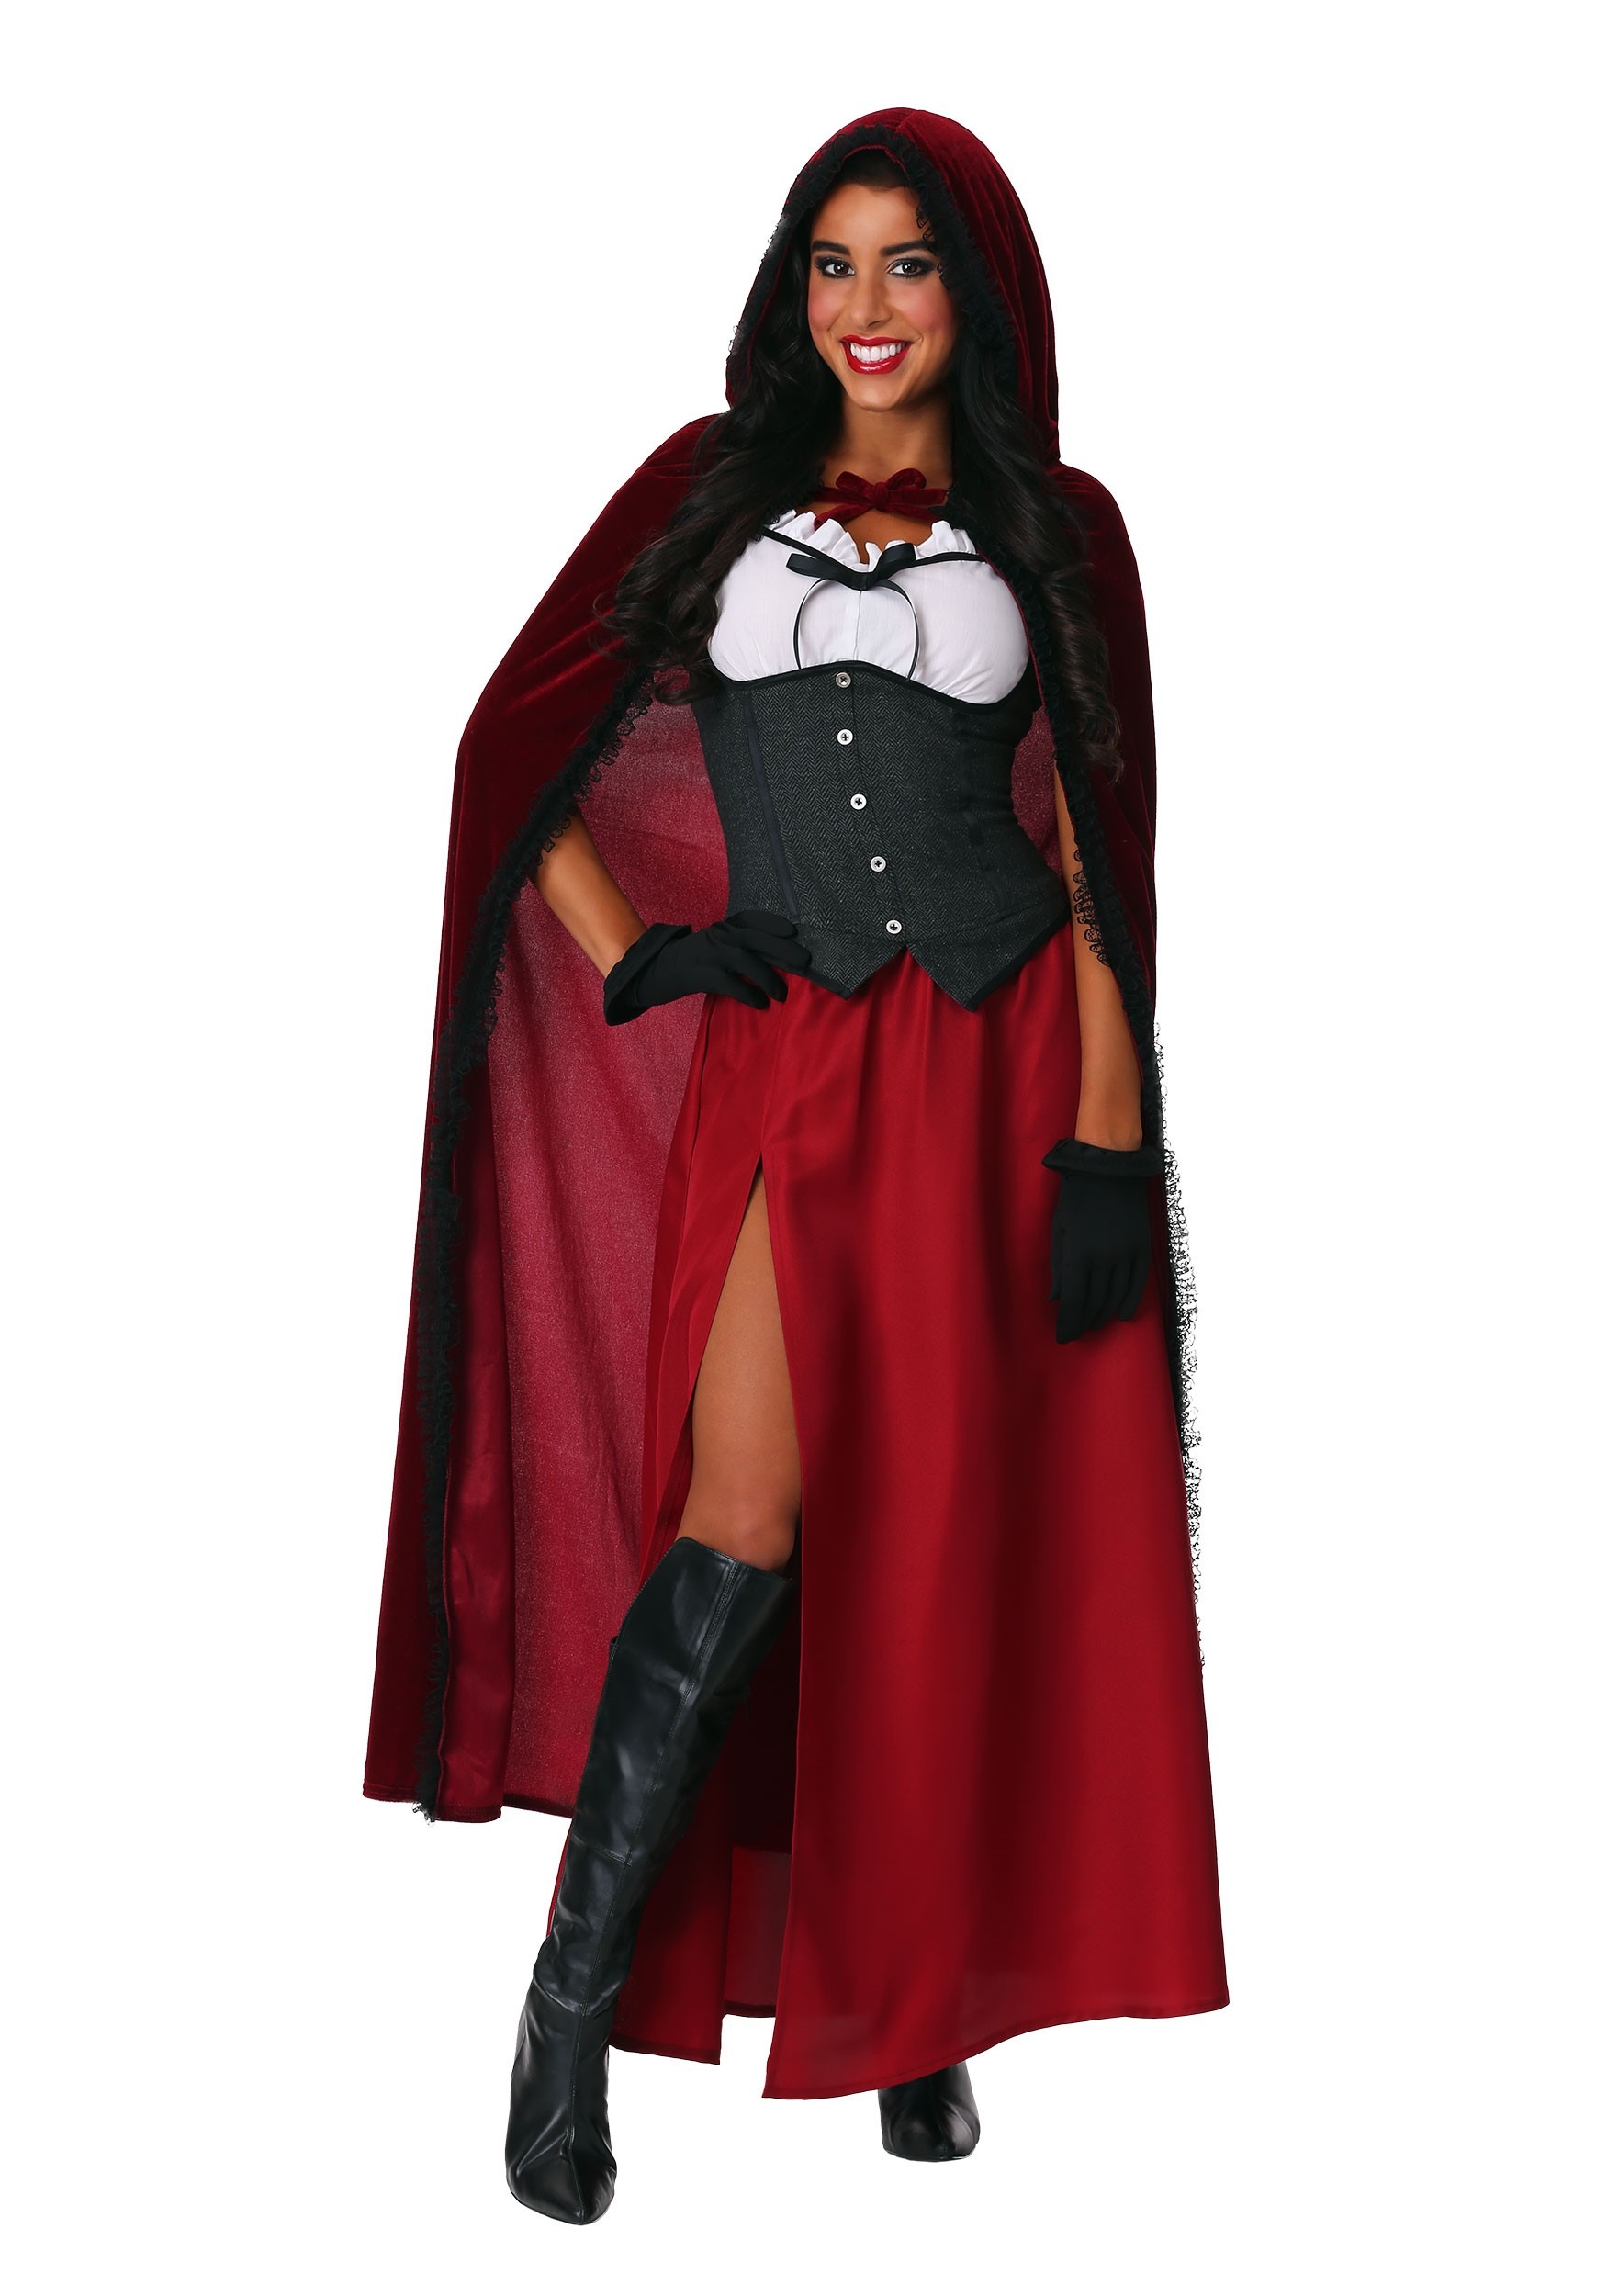 Ravishing Red Riding Hood Womens Costume